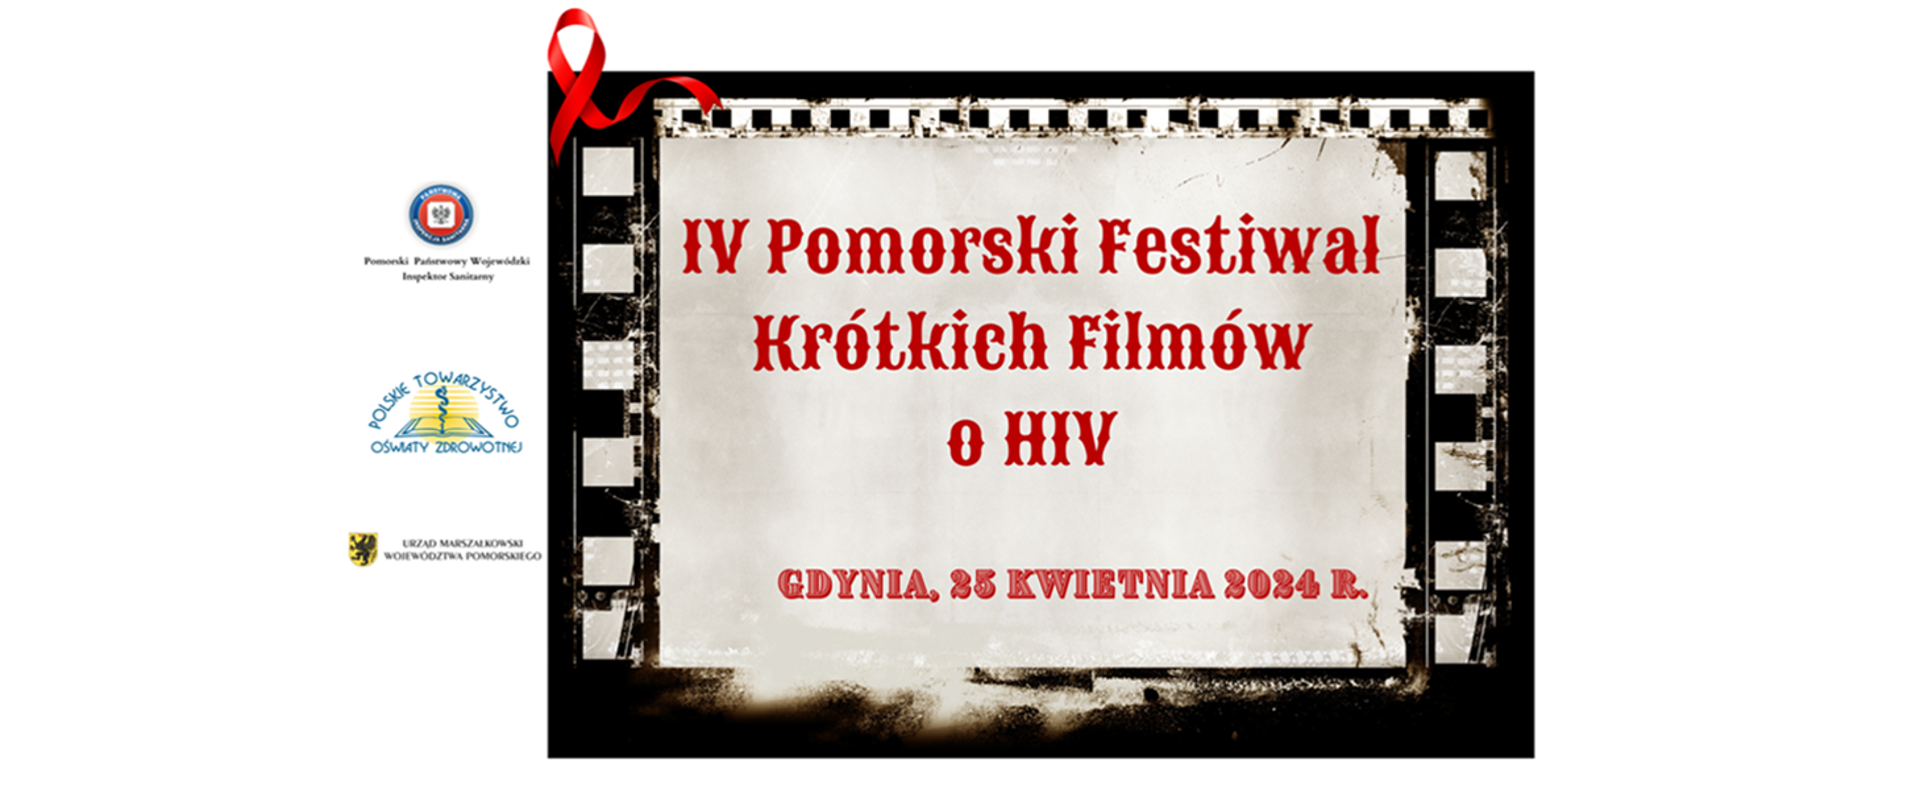 IV Pomorski Festiwal Krótkich Filmów o HIV - czerwony napis na kadrze filmowym, obok logo Inspekcji Sanitarnej, Polskiego Towarzystwa Oświaty Zdrowotnej i Urzędu Marszałkowskiego Województwa Pomorskiego